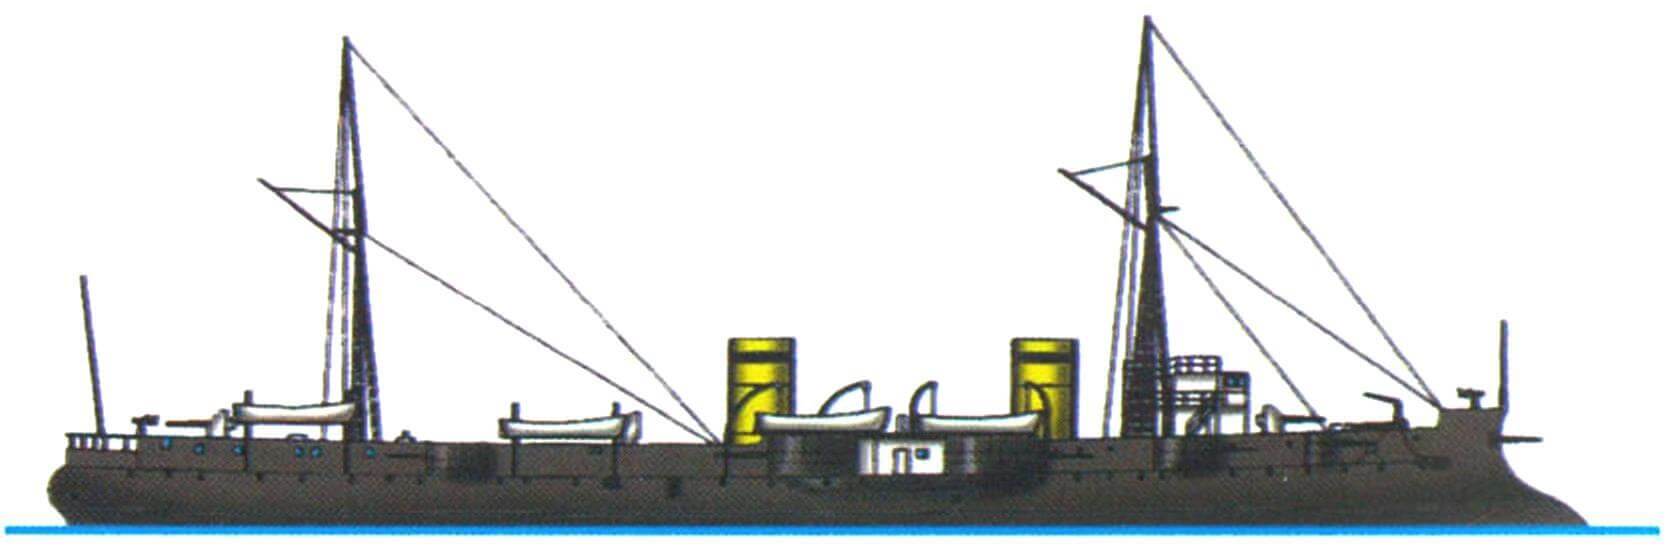 Бронепалубный крейсер «Декарт» (Франция, 1898 г.)